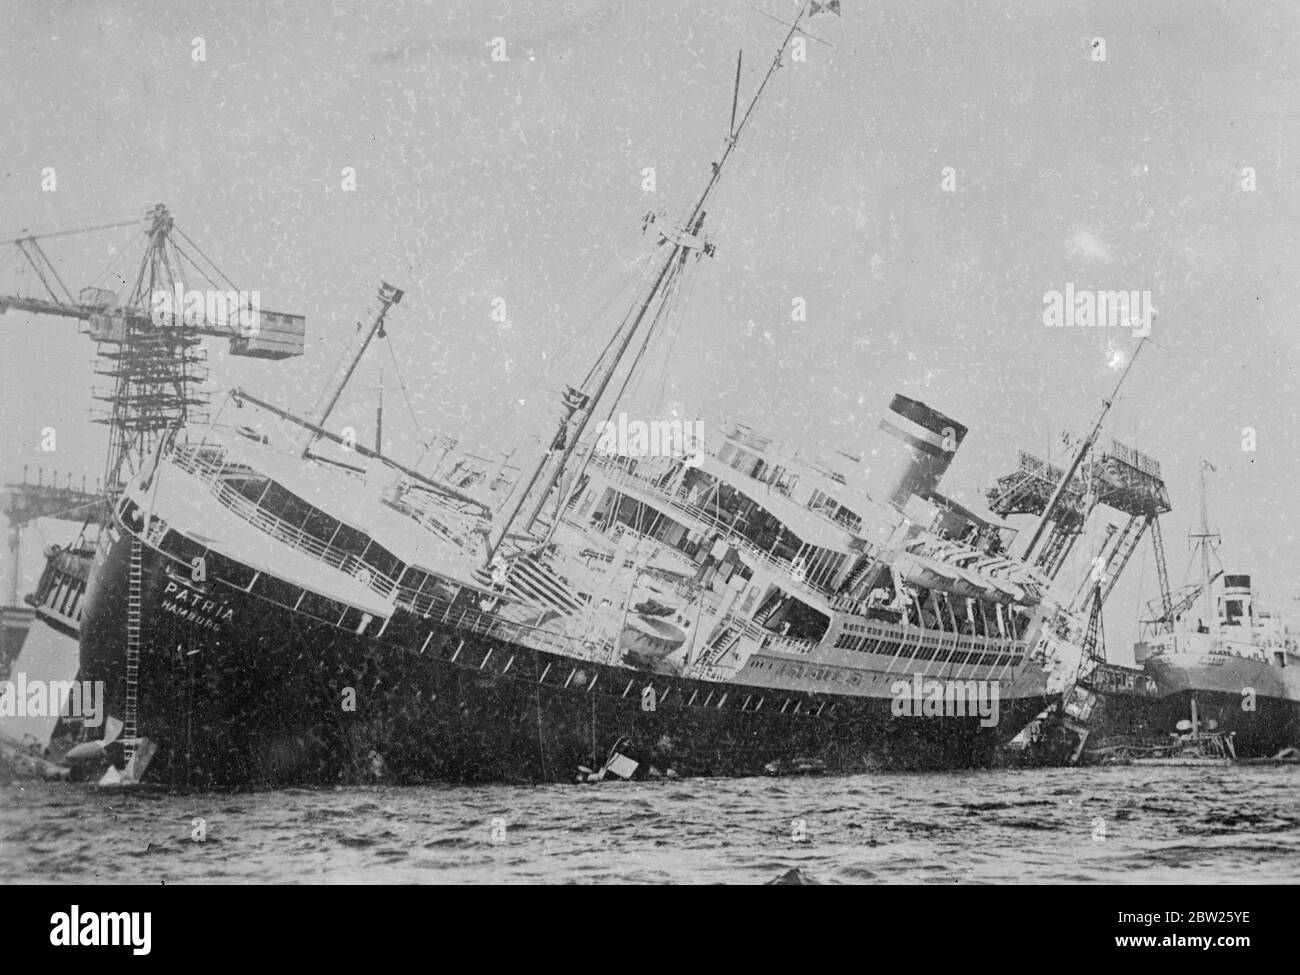 Le nouveau navire s'affiche soudainement dans le quai. Le nouveau navire électrique Hapag « Patria » se penchant sur ce qui semble être un angle dangereusement aigu après qu'elle ait soudainement développé une liste à quai à Hambourg. 11 juillet 1938 Banque D'Images